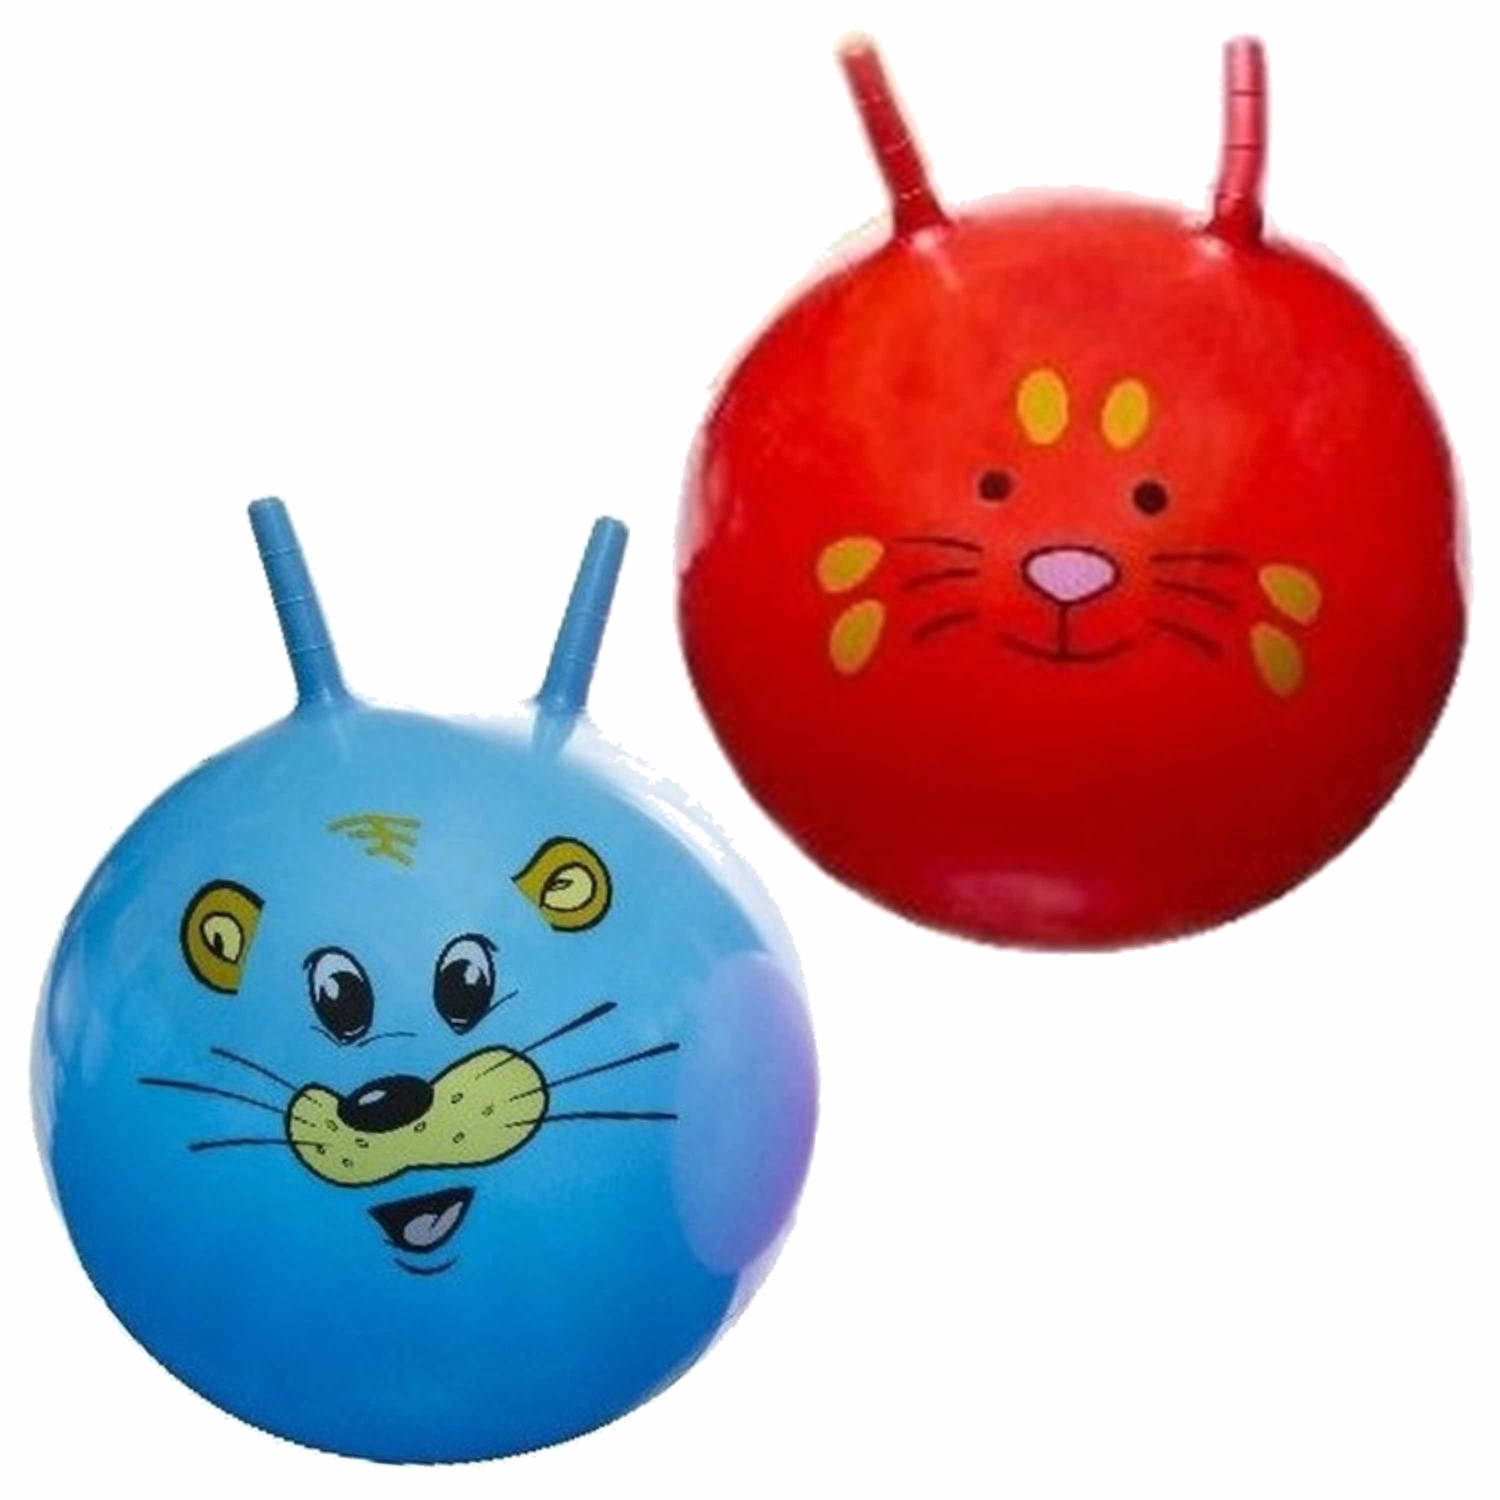 2x stuks speelgoed Skippyballen met dieren gezicht rood en blauw 46 cm Skippyballen